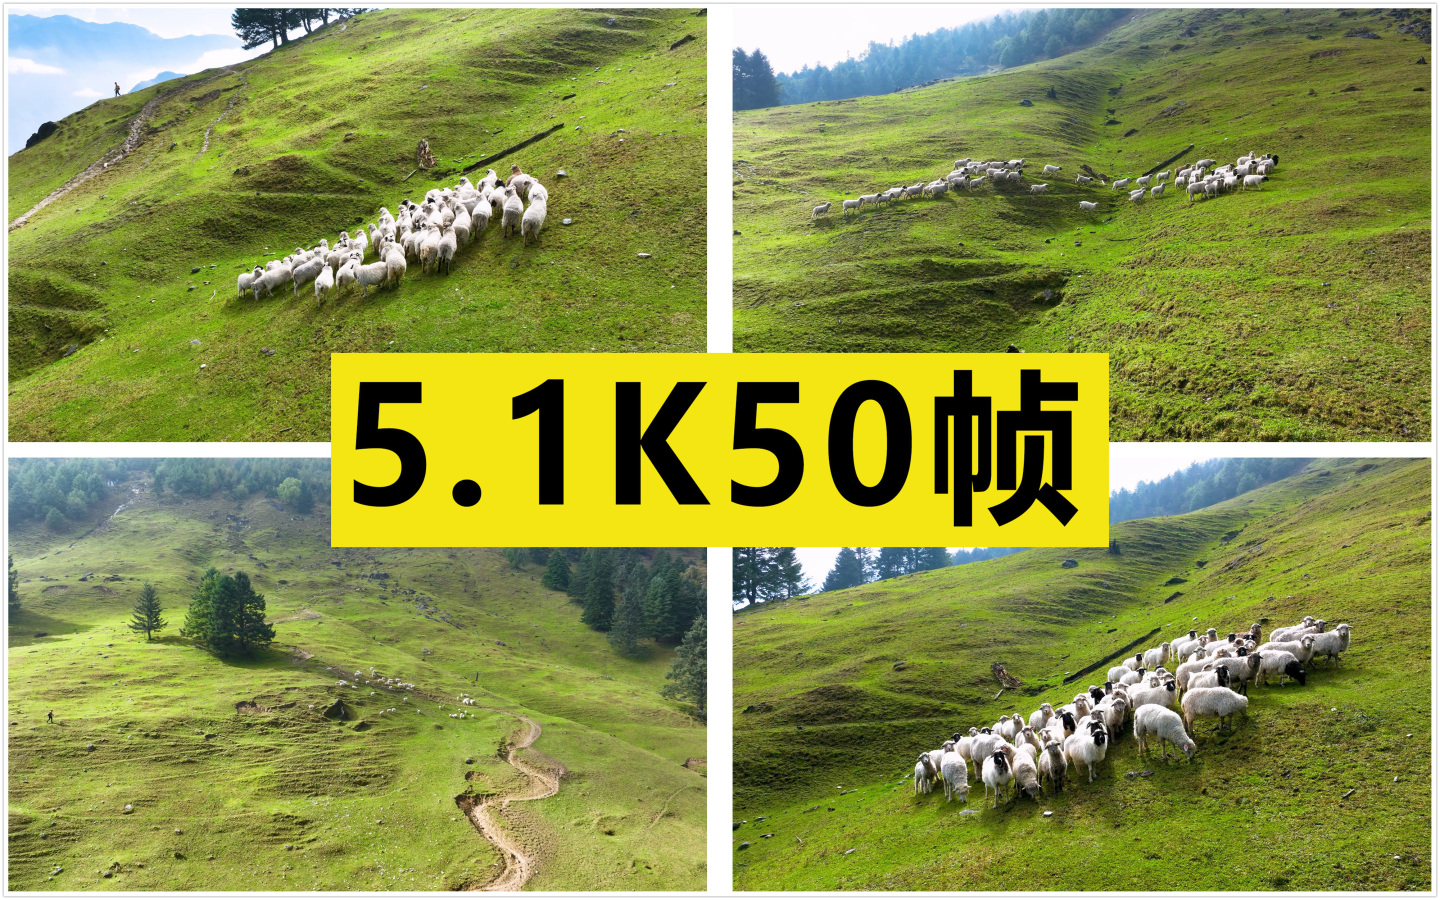 山坡上的羊群【原创5.1K50帧】